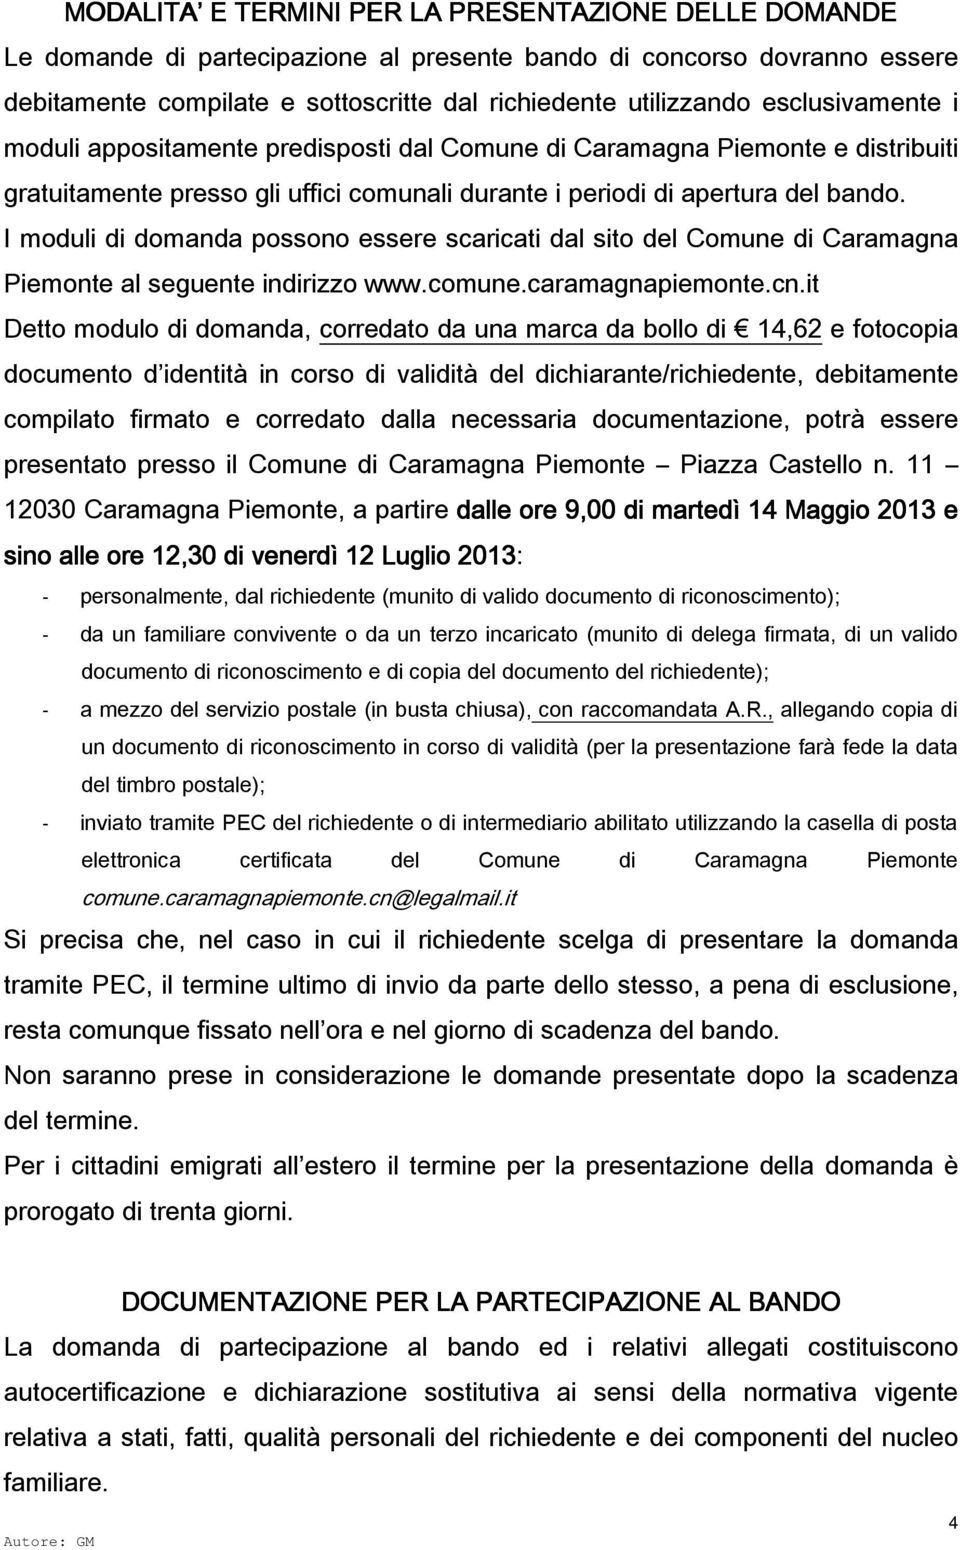 I moduli di domanda possono essere scaricati dal sito del Comune di Caramagna Piemonte al seguente indirizzo www.comune.caramagnapiemonte.cn.